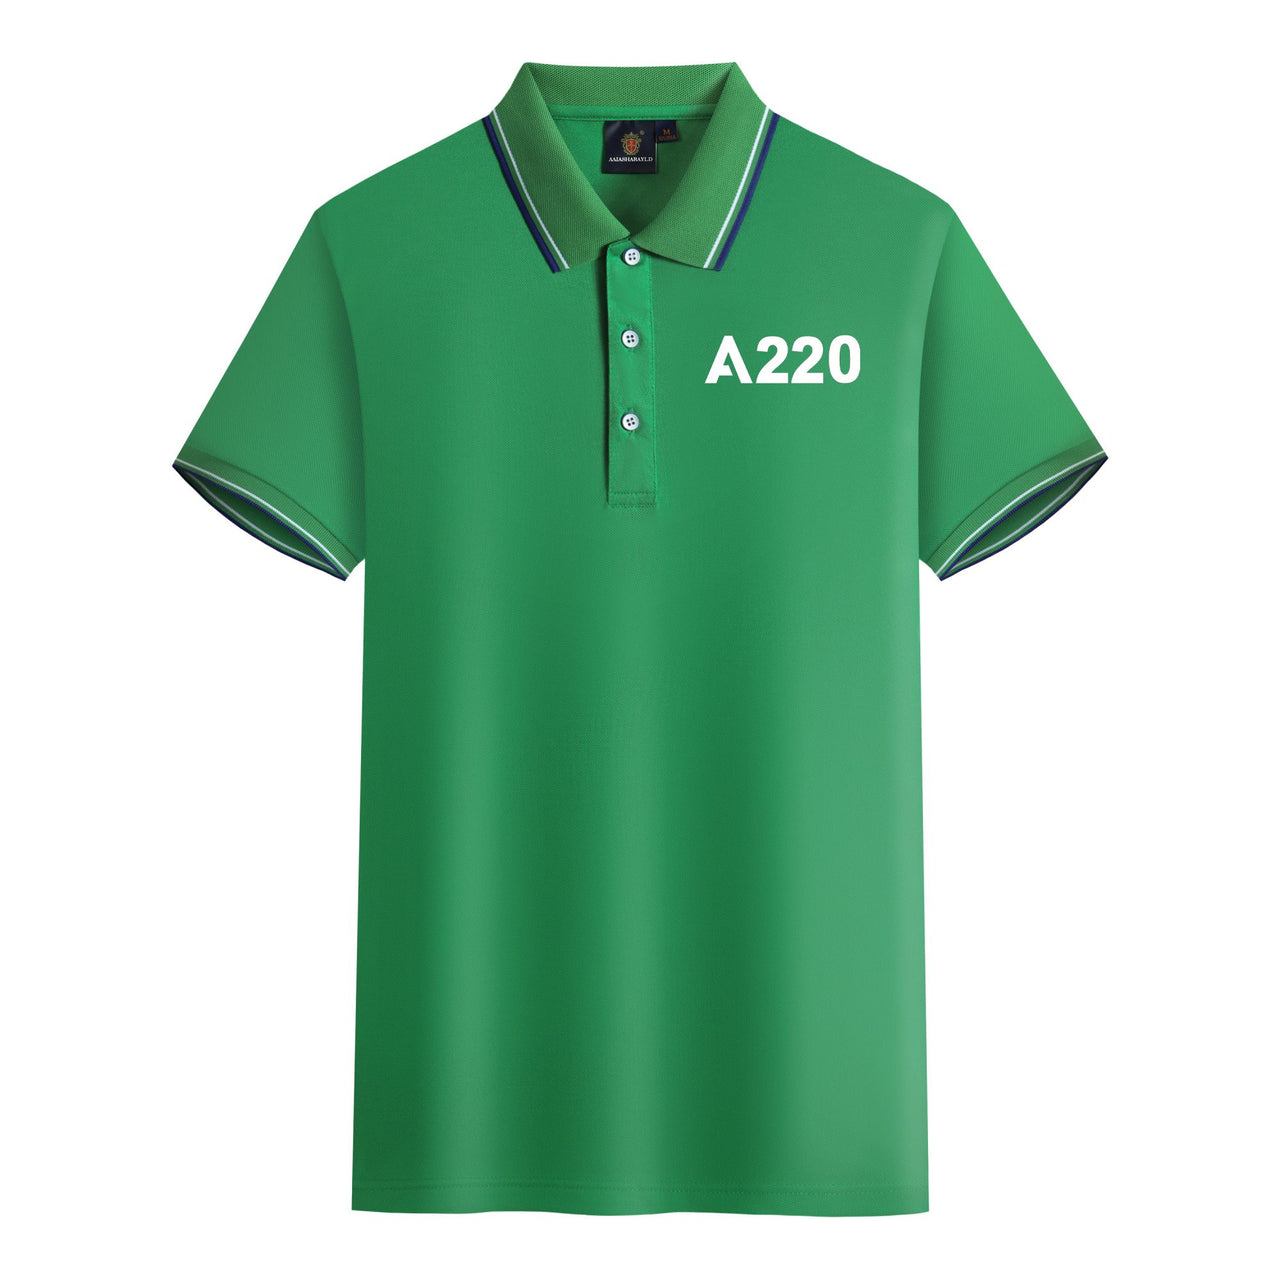 A220 Flat Text Designed Stylish Polo T-Shirts